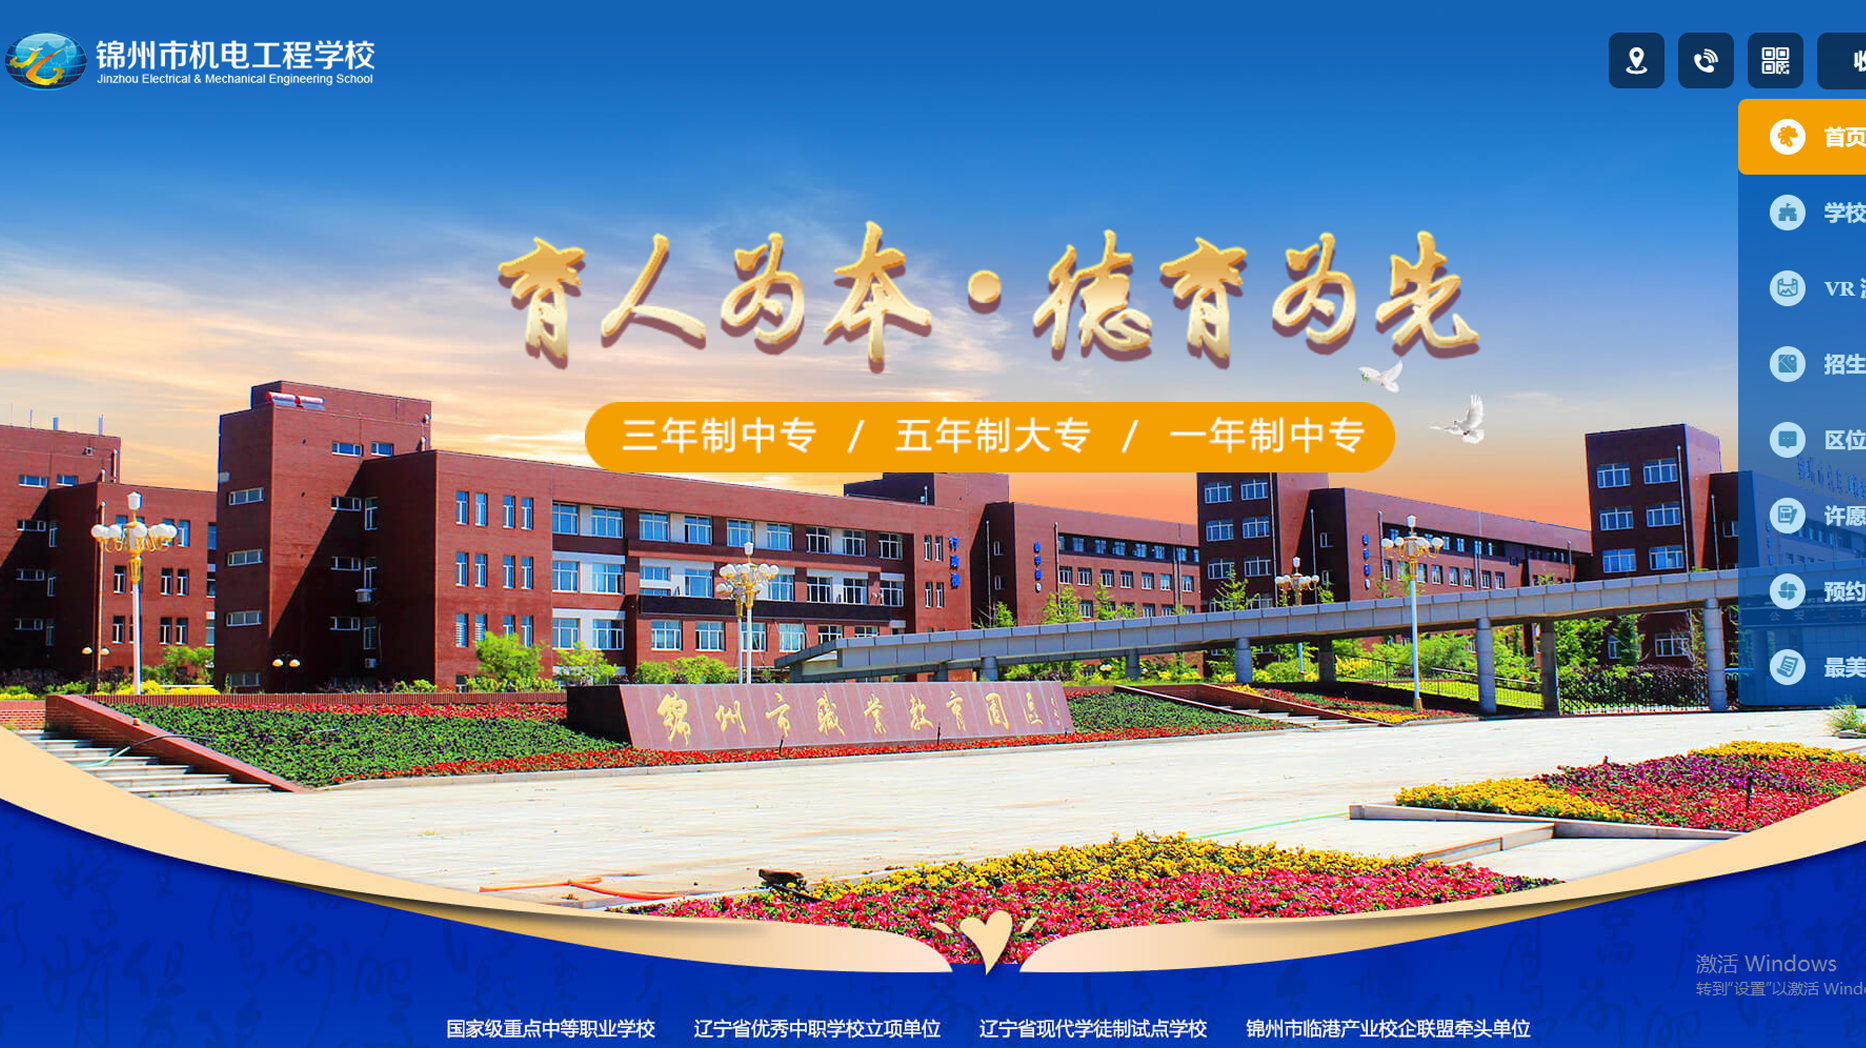 锦州市机电工程学校